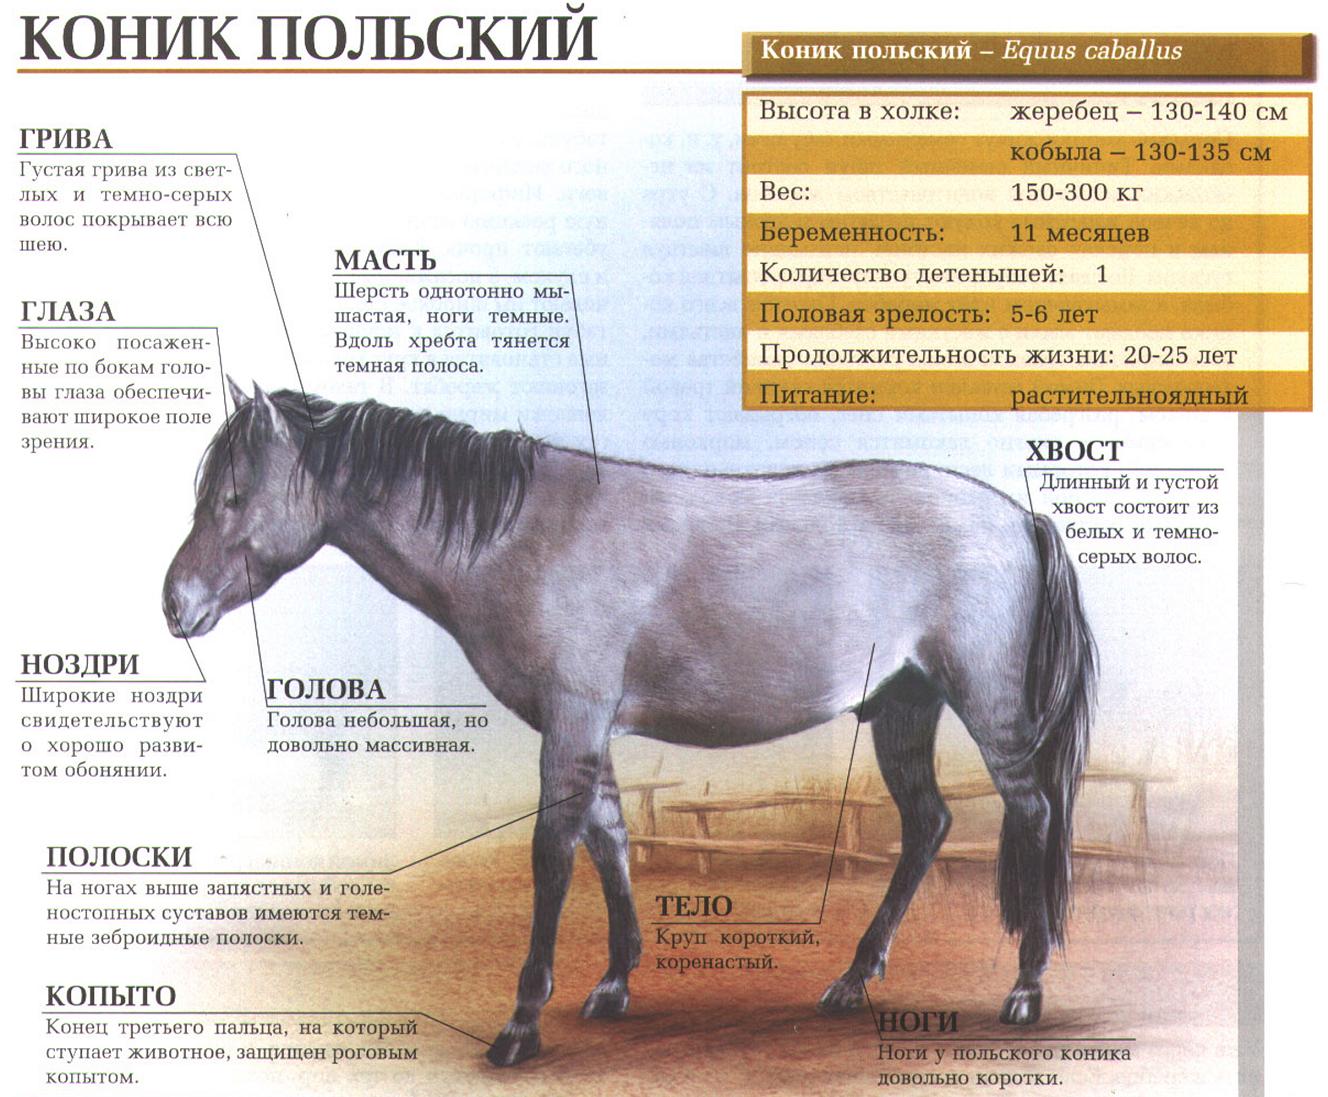 Польский коник или тарпан.:::Тарпан (польский коник). Сайт о животных.  PiLife